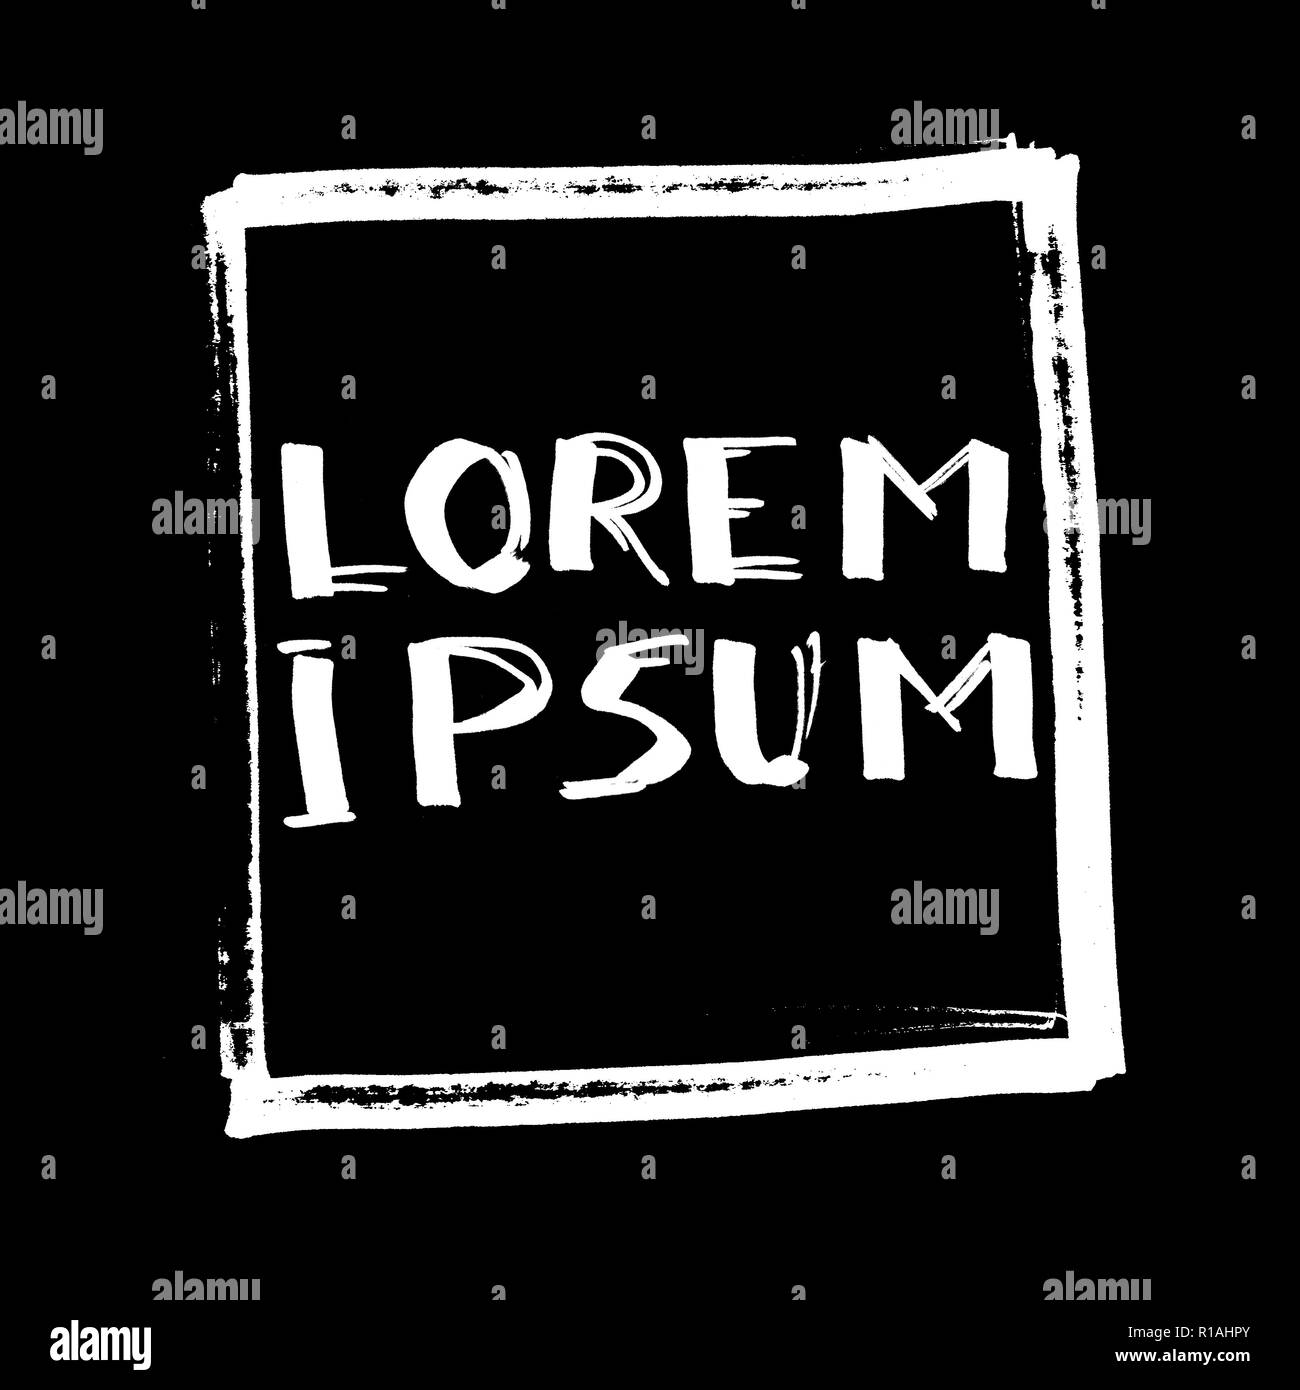 Lorem Ipsum (campione di testo). Lettering, fumetti design per t-shirt o poster, sfondo nero Foto Stock